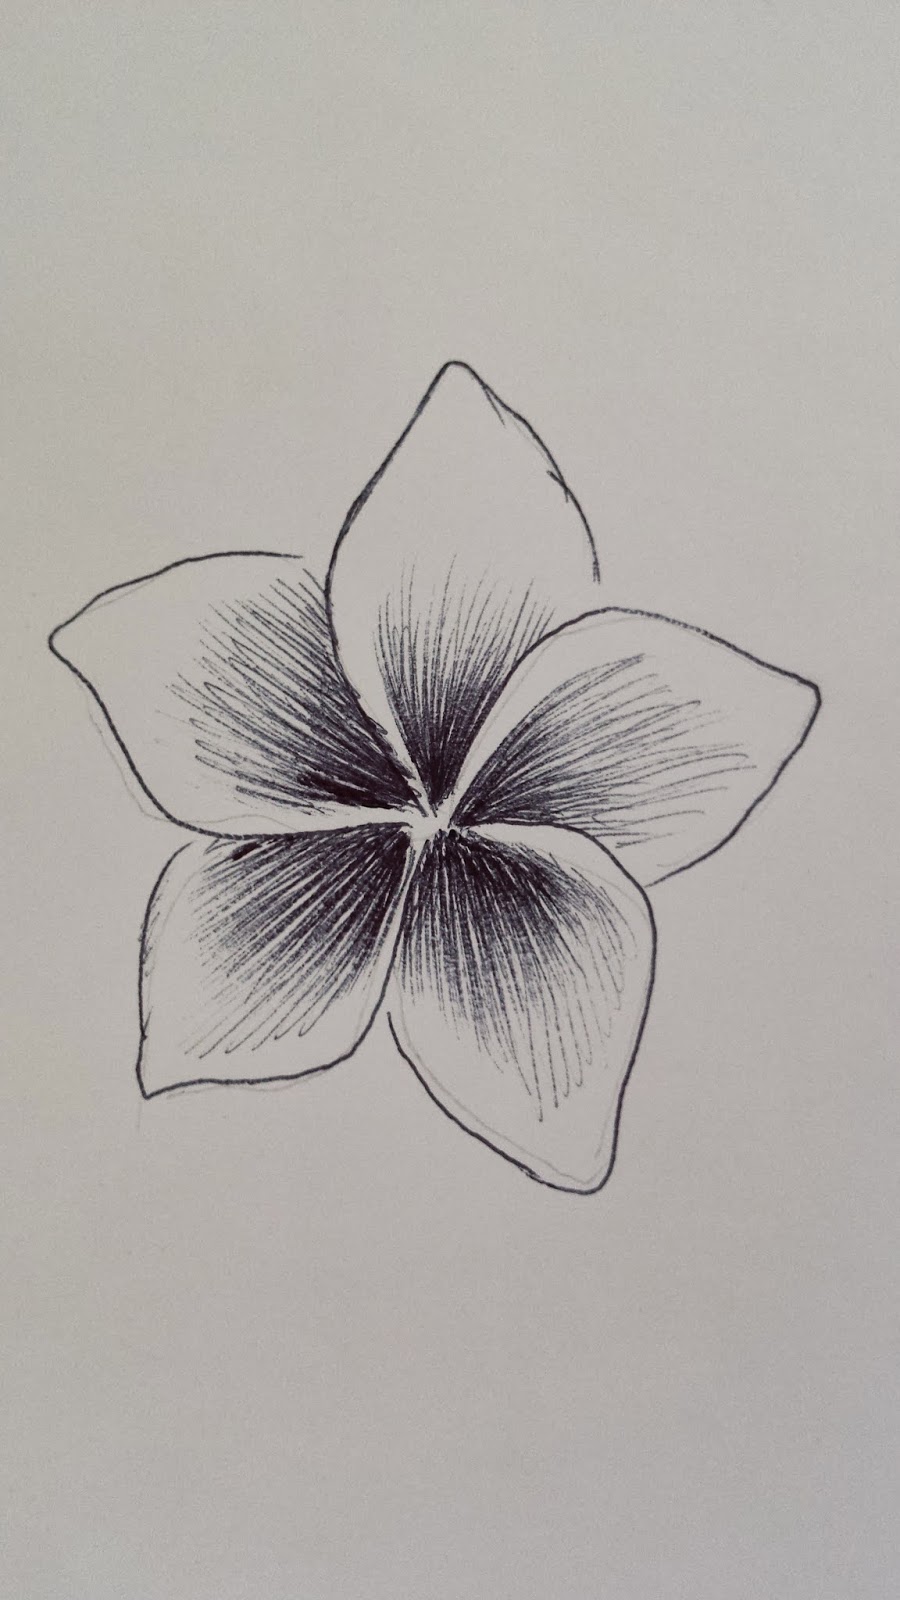 How do you draw flowers - crossraf